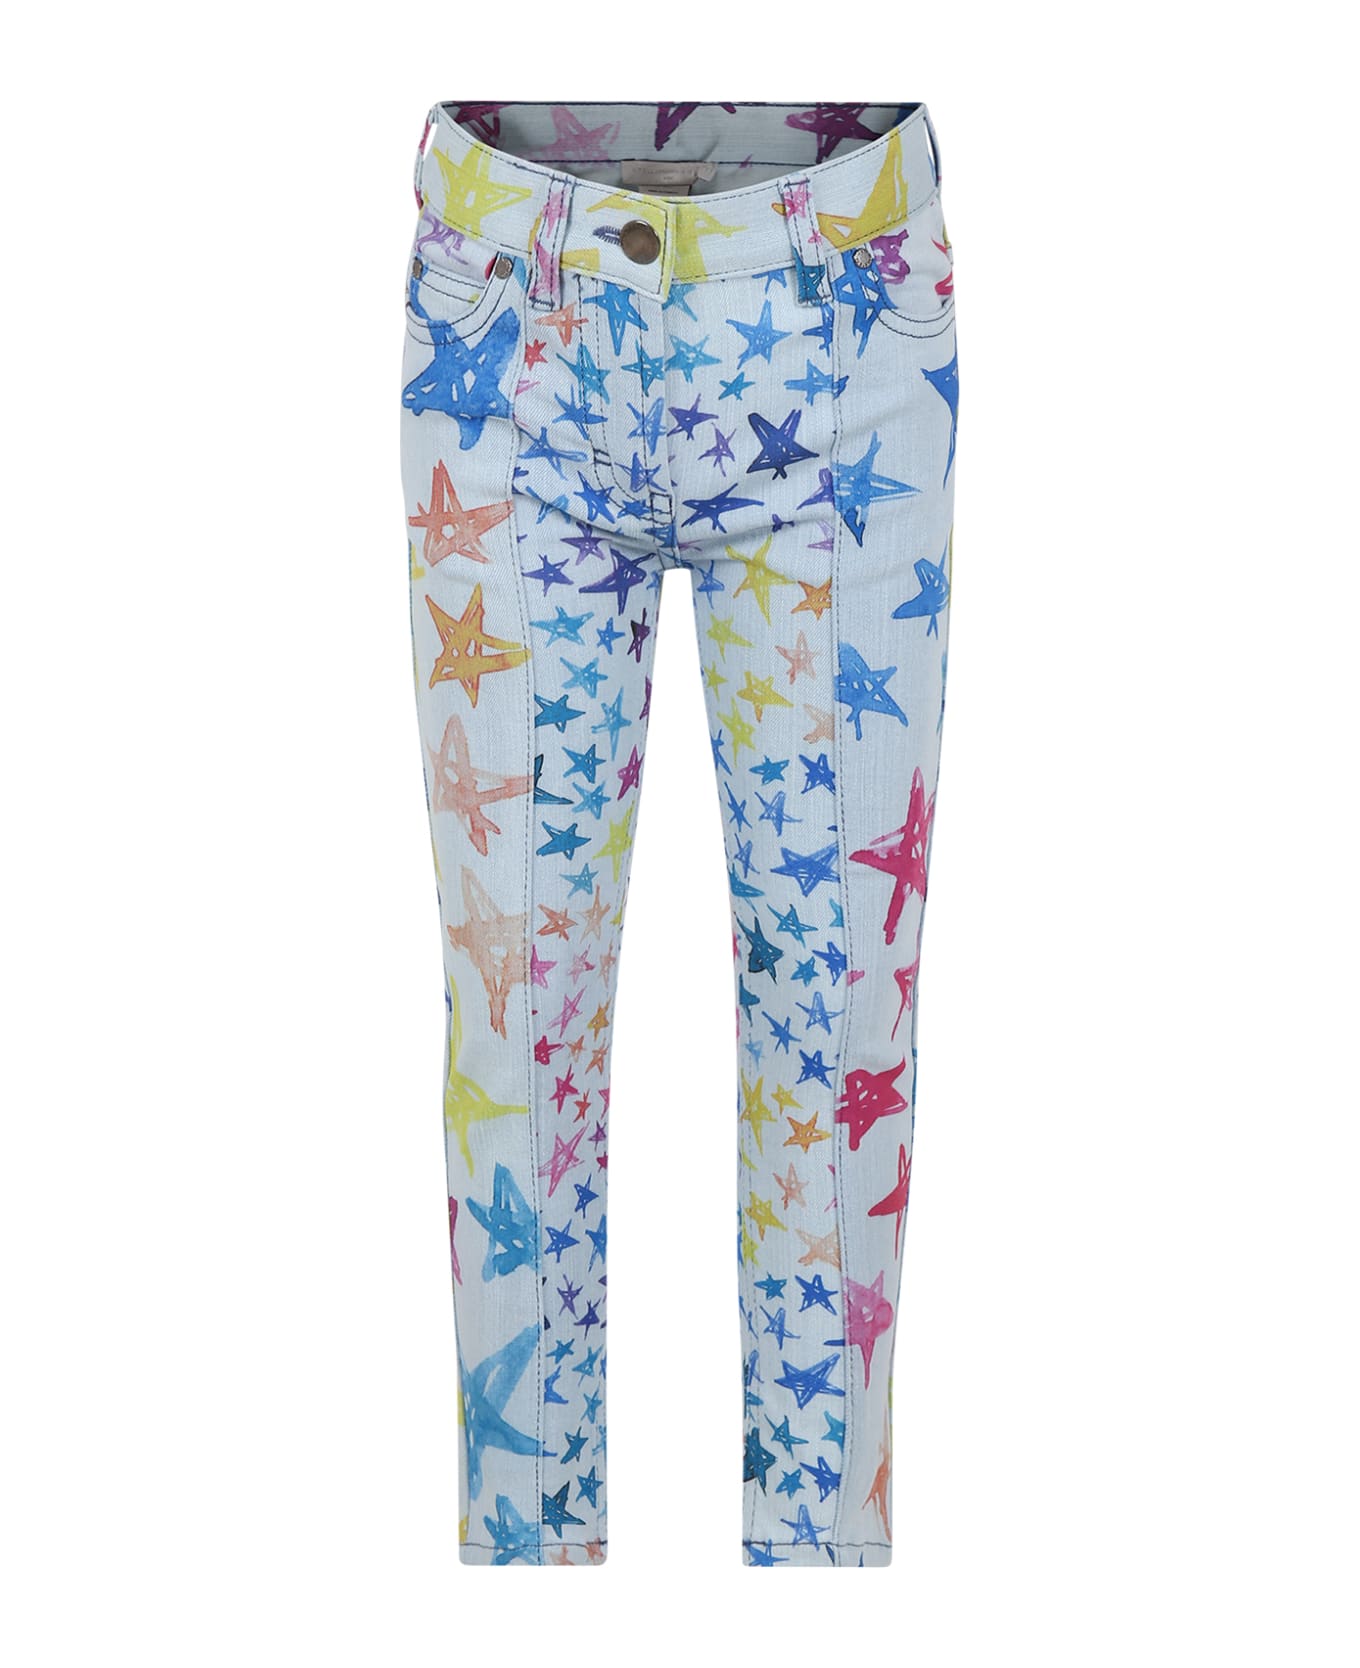 Stella McCartney Kids Light Blue Jeans For Girl With Stars Print - Denim